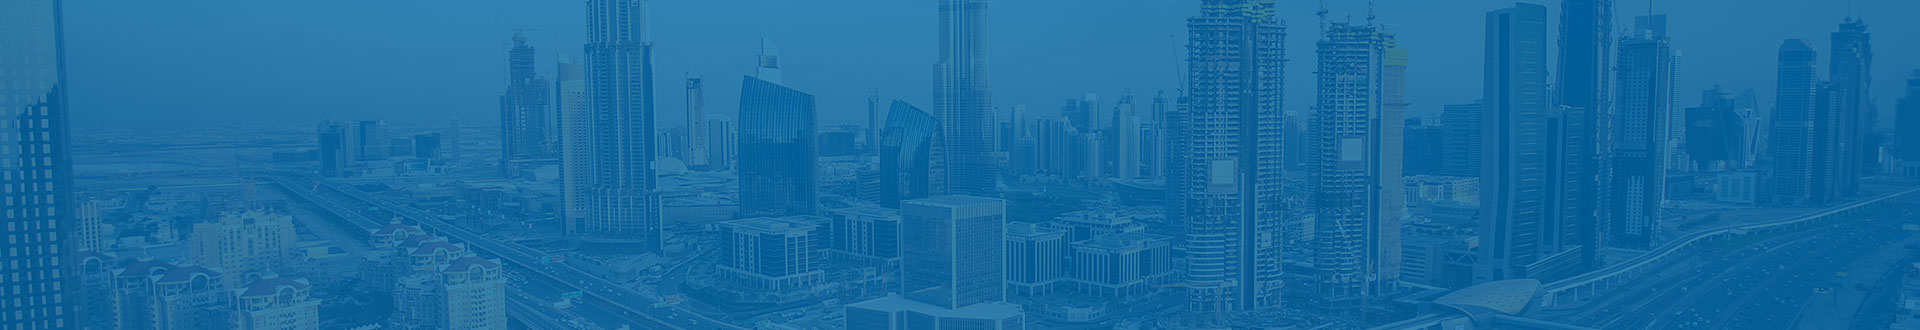 Dubai cityscape with blue overlay. 